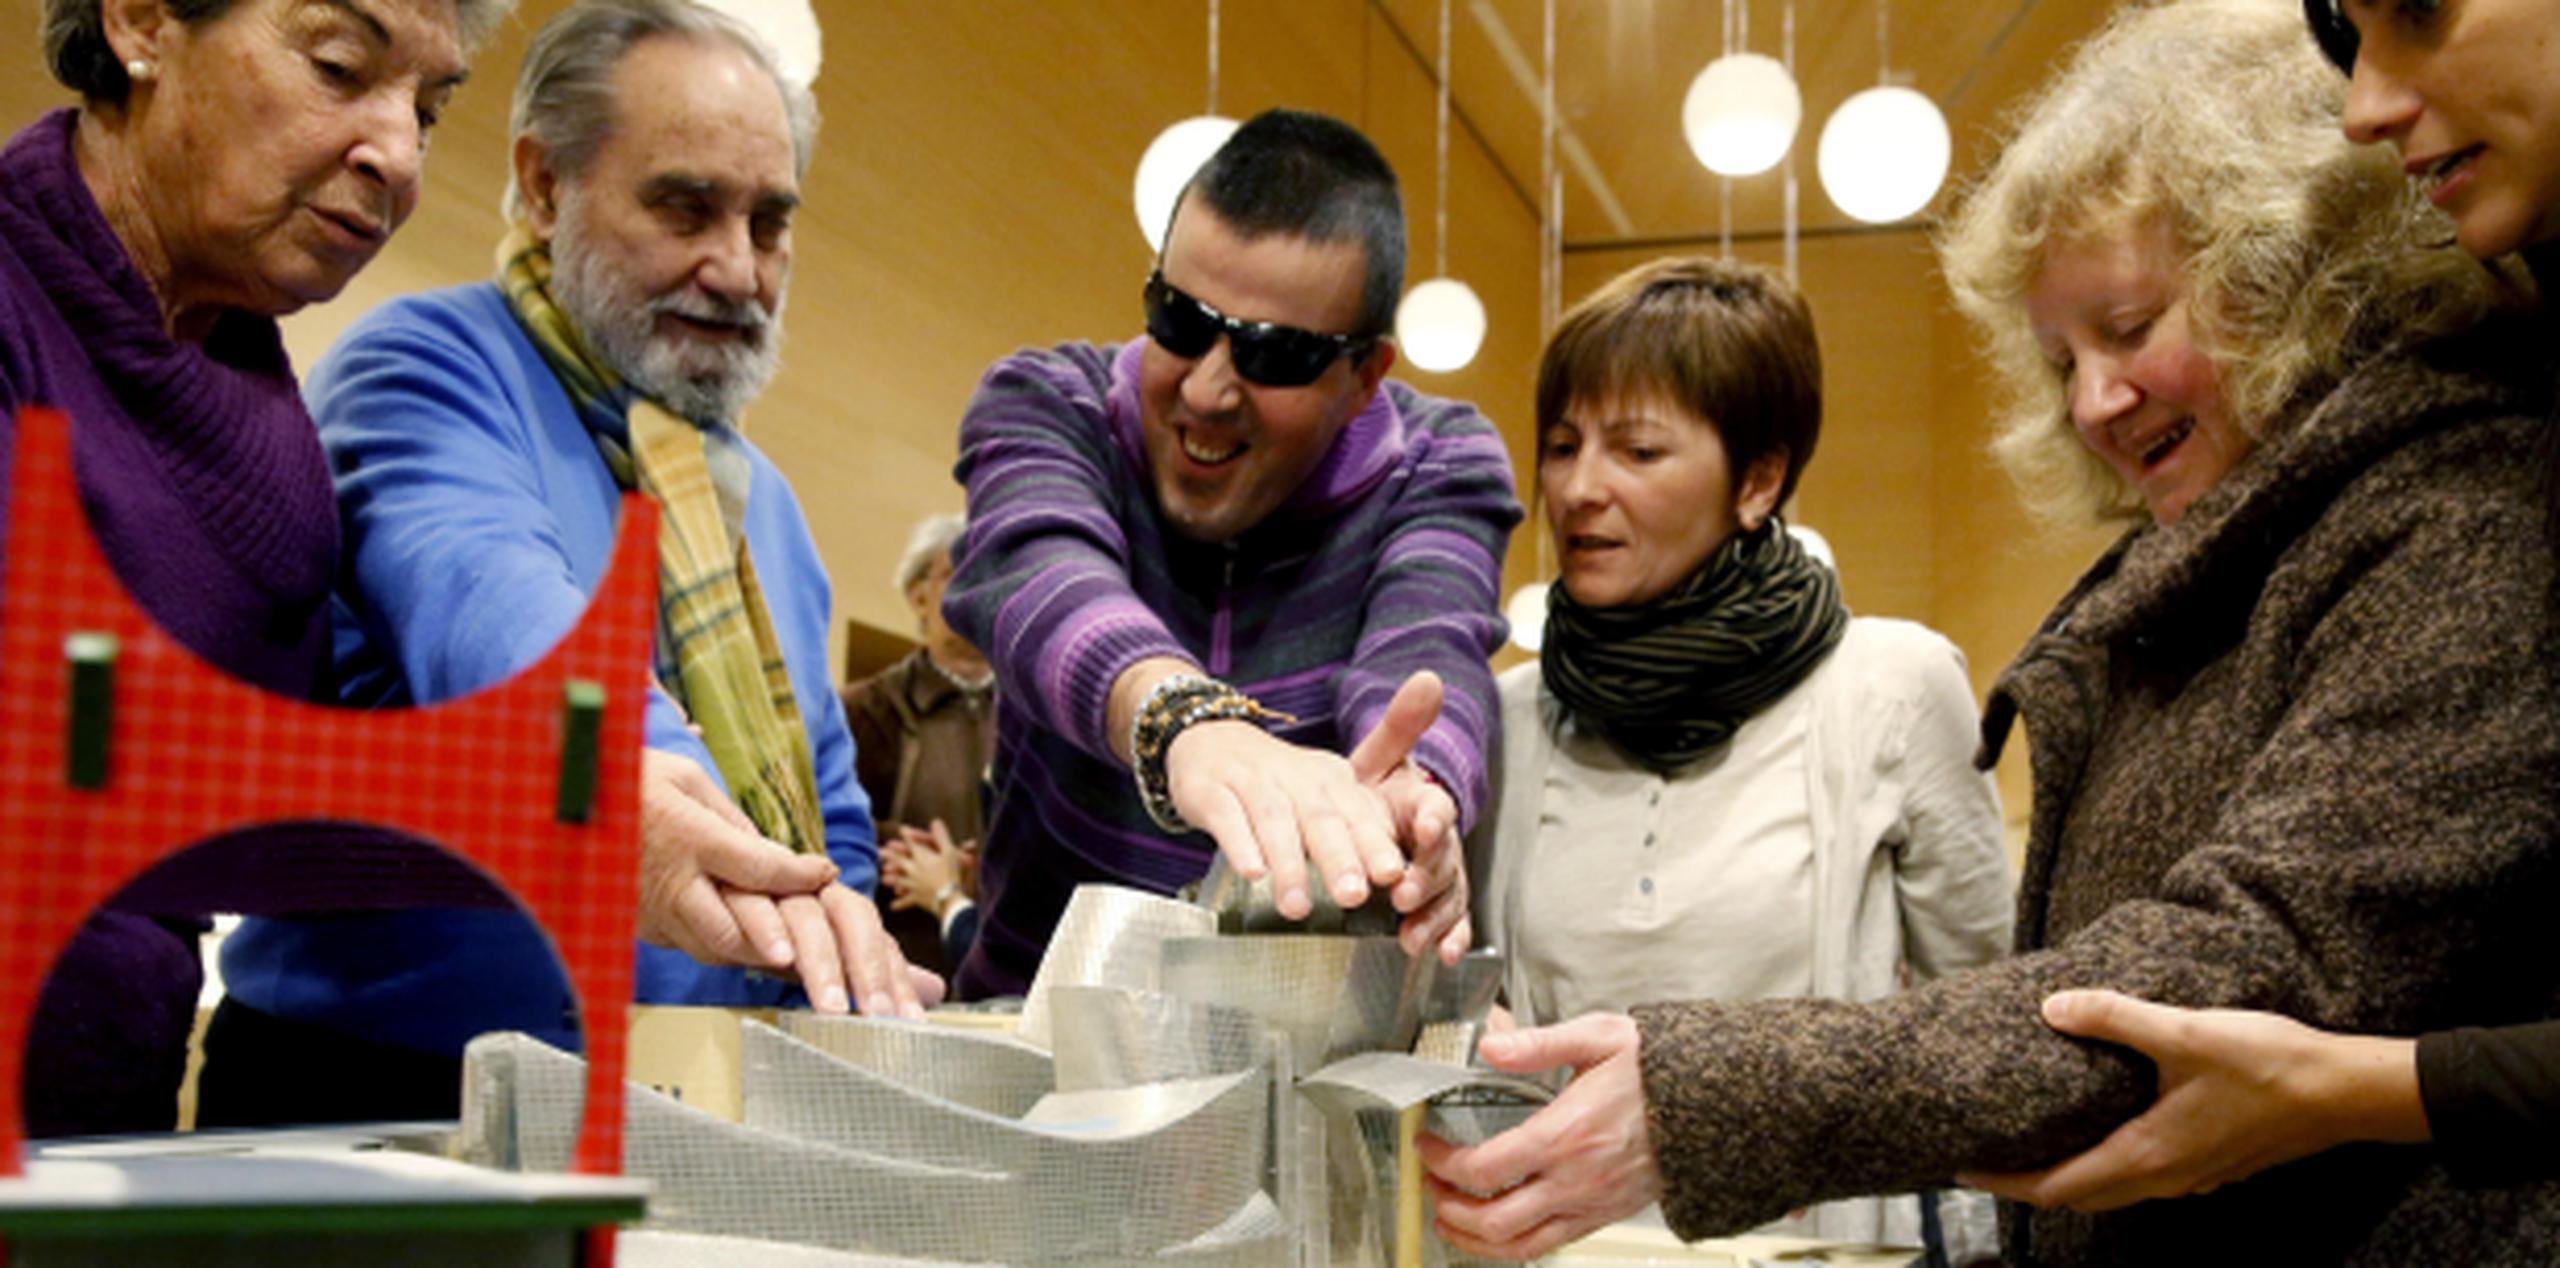 Ciegos tocan una de las nuevas maquetas del Museo Guggenheim de Bilbao, donde hoy se han dado a conocer los nuevos dispositivos para personas con discapacidades. (EFE)